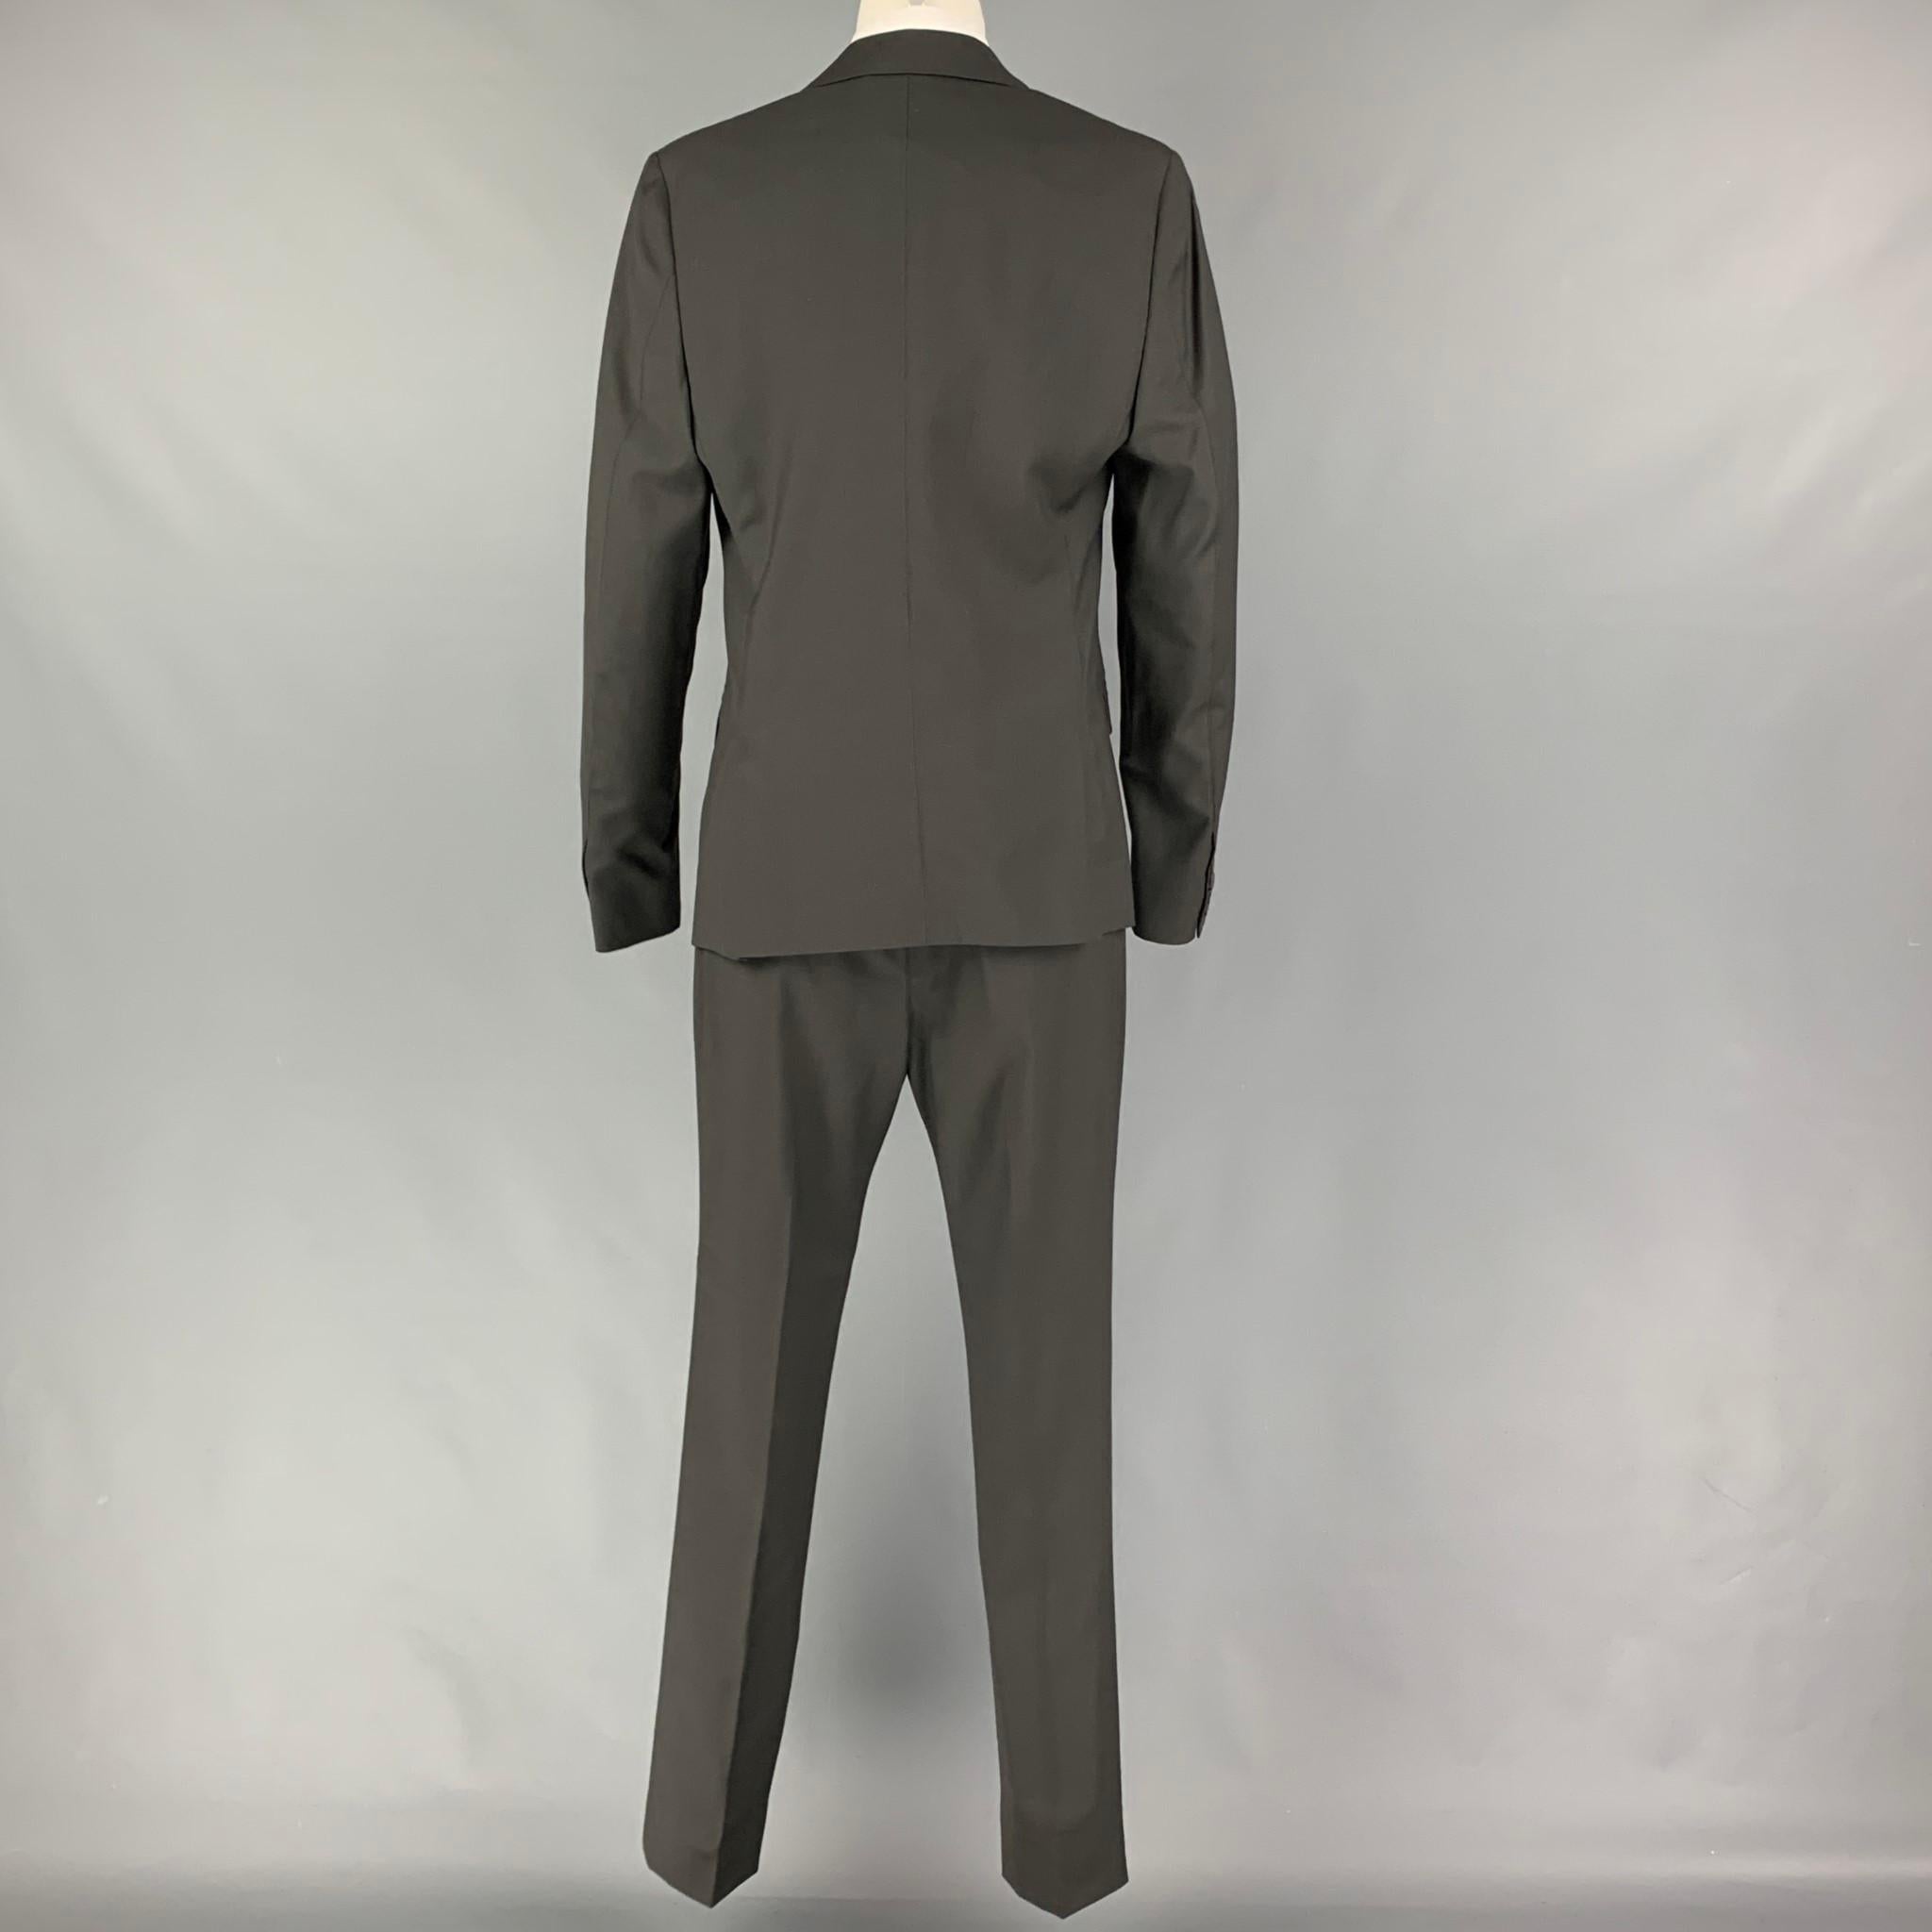 Men's CALVIN KLEIN COLLECTION Size 36 Charcoal Wool Notch Lapel Suit